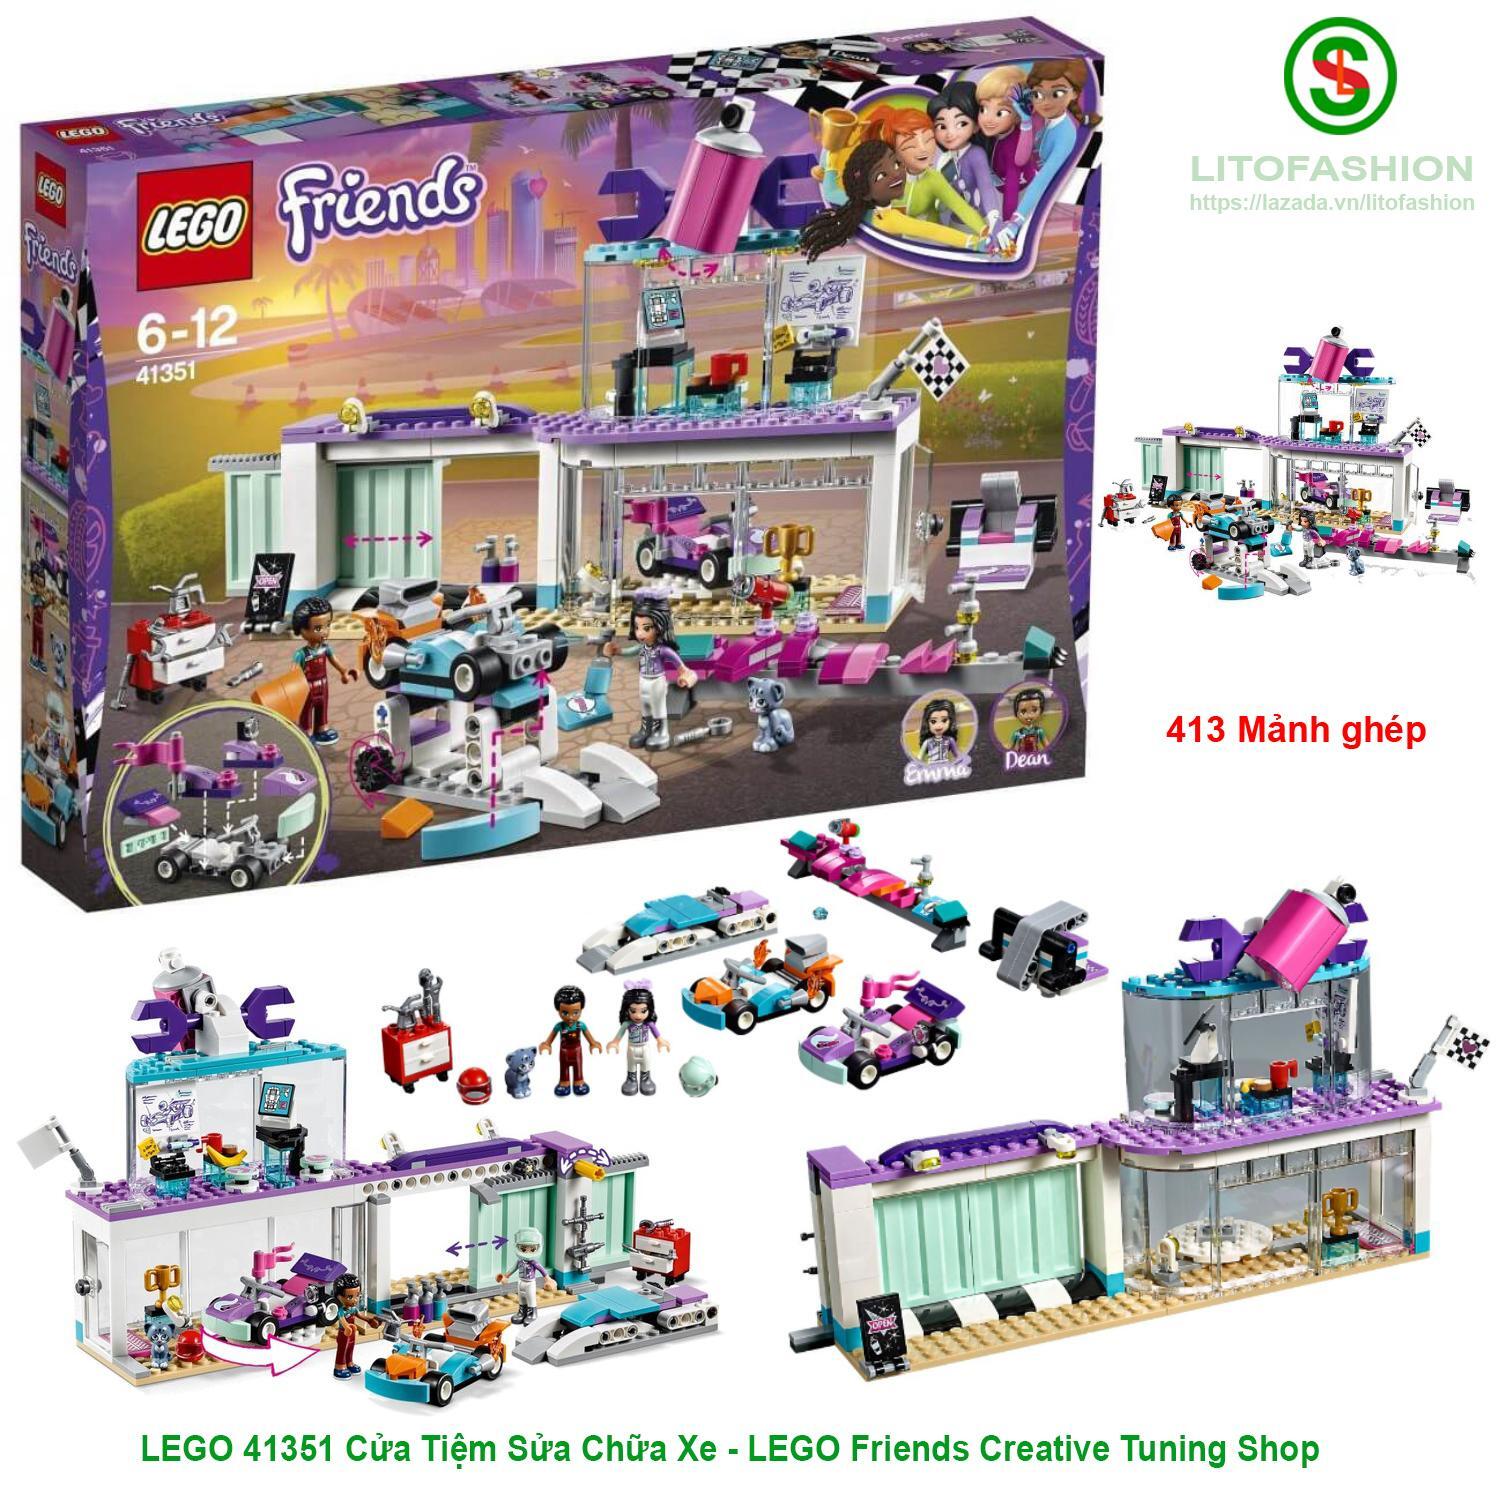 Đồ chơi Lego Friends 41351 - Cửa tiệm sửa chữa xe (413 Mảnh ghép)